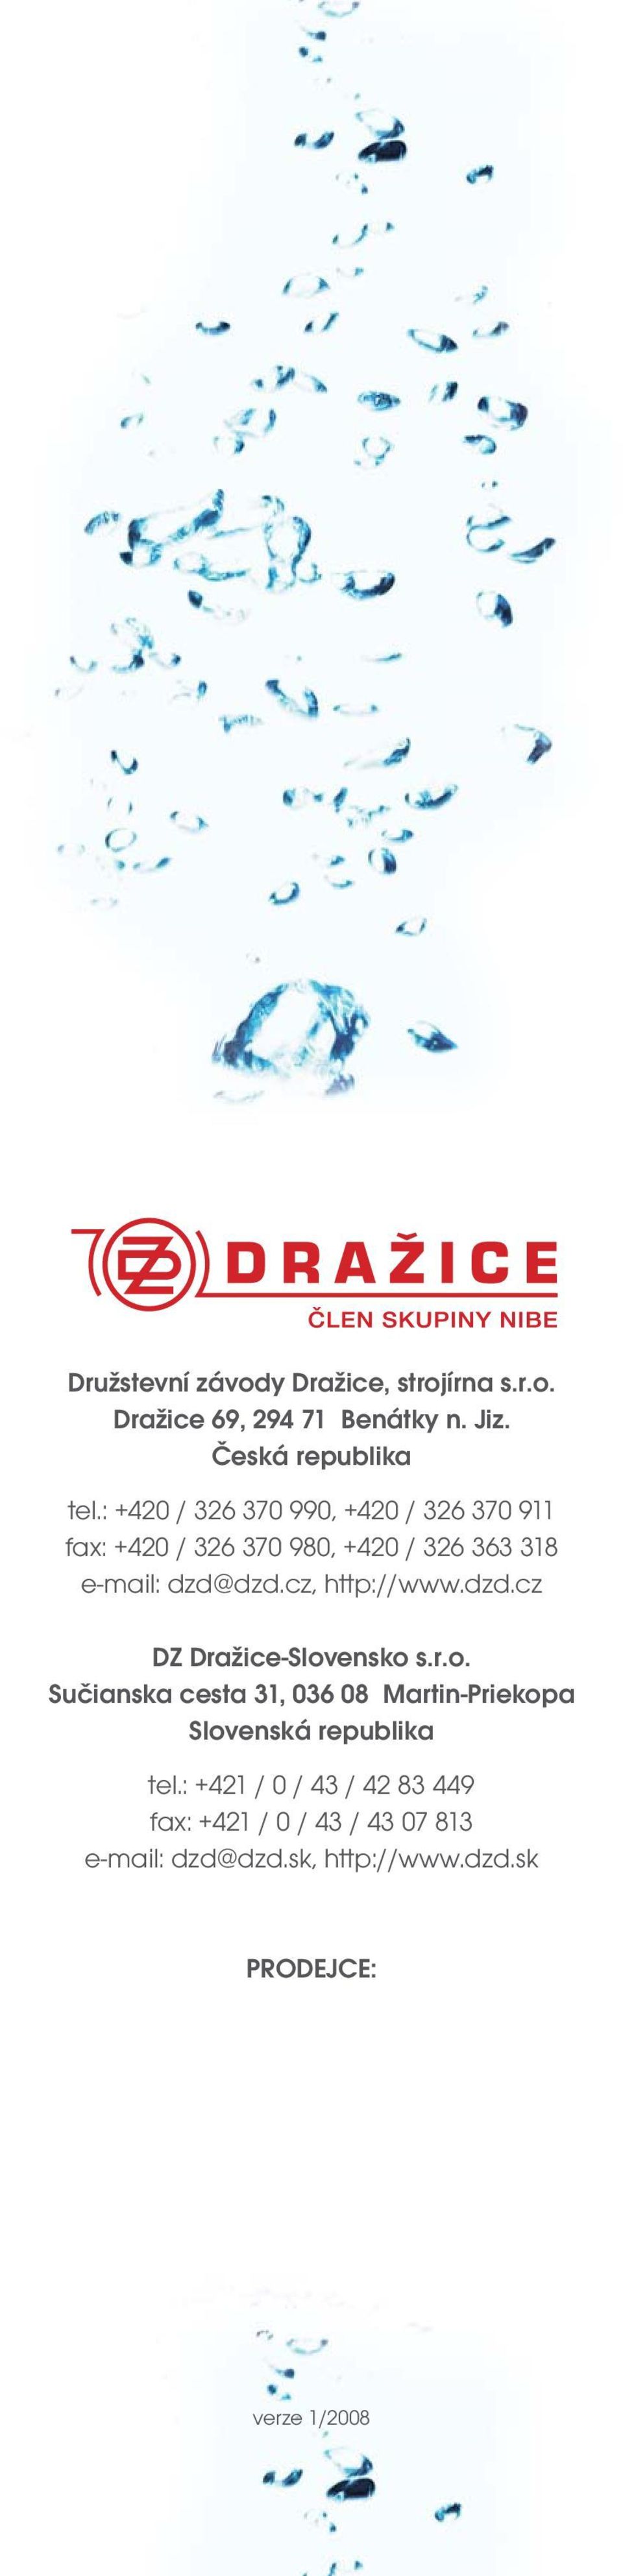 cz, http://www.dzd.cz DZ Dražice-Slovensko s.r.o. Sučianska cesta 31, 036 08 Martin-Priekopa Slovenská republika tel.